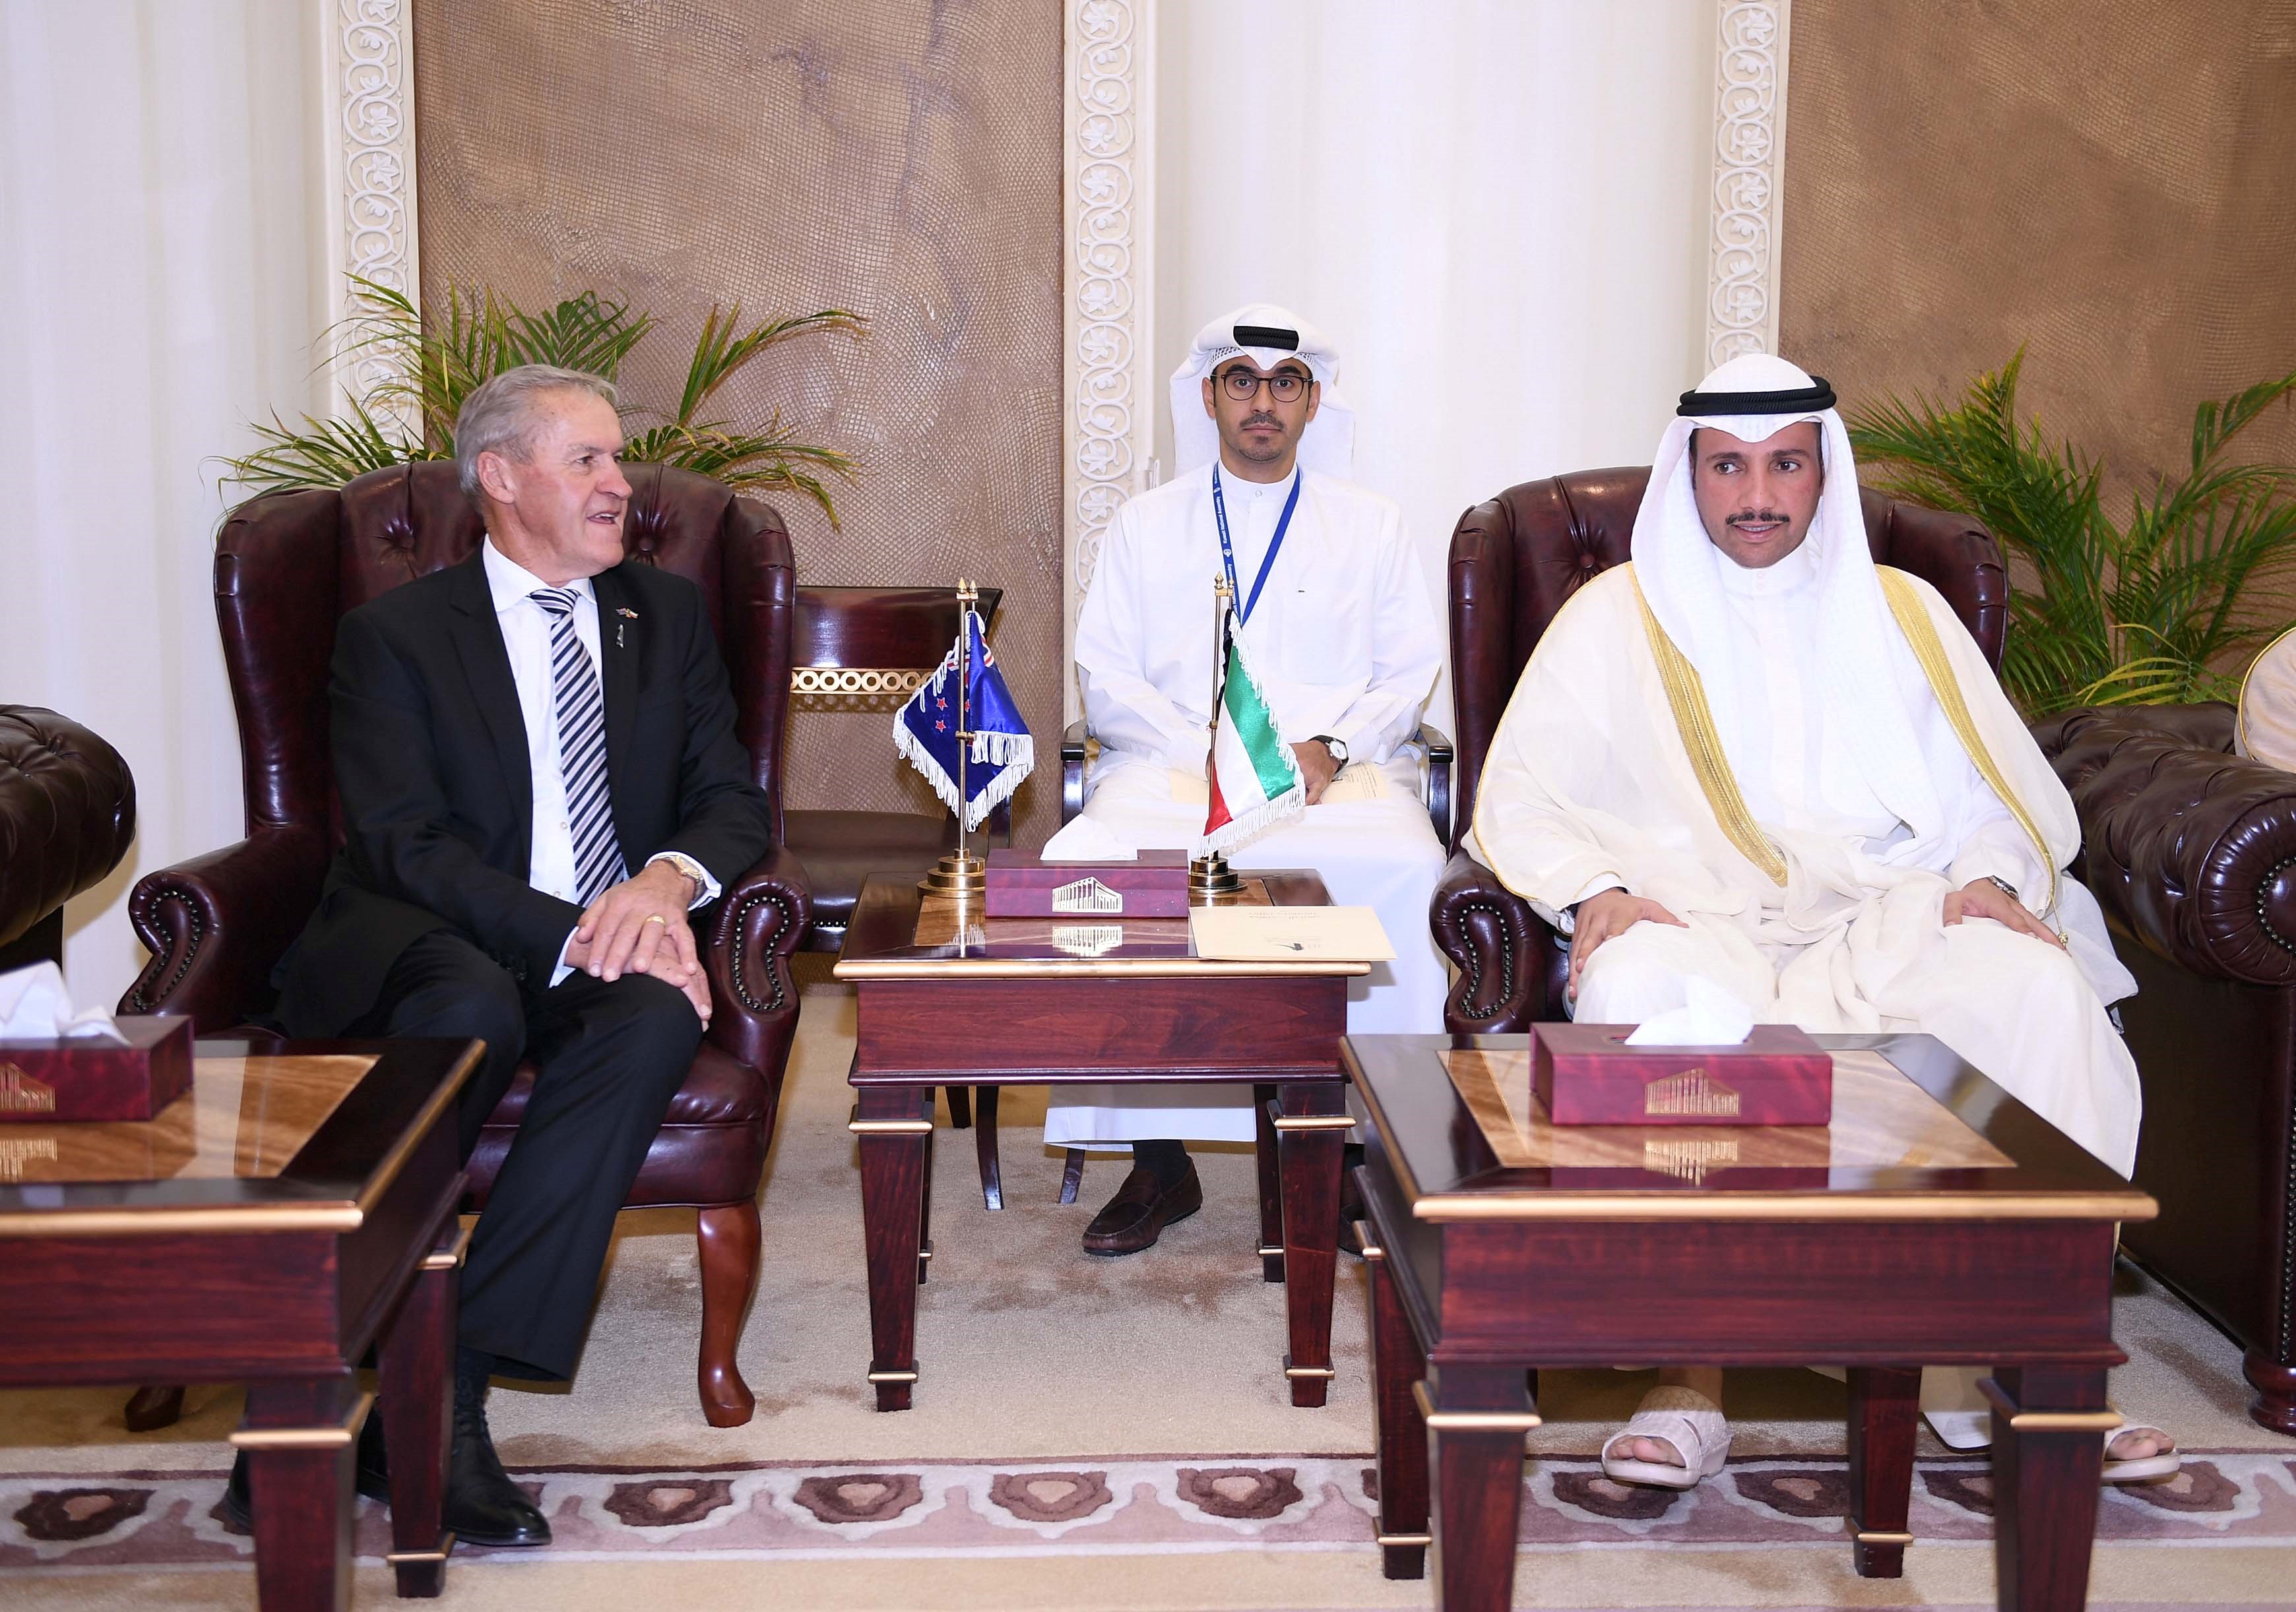 رئيس مجلس الأمة الكويتي مرزوق علي الغانم خلال لقائه مع رئيس البرلمان النيوزيلندي ديفيد كارتر